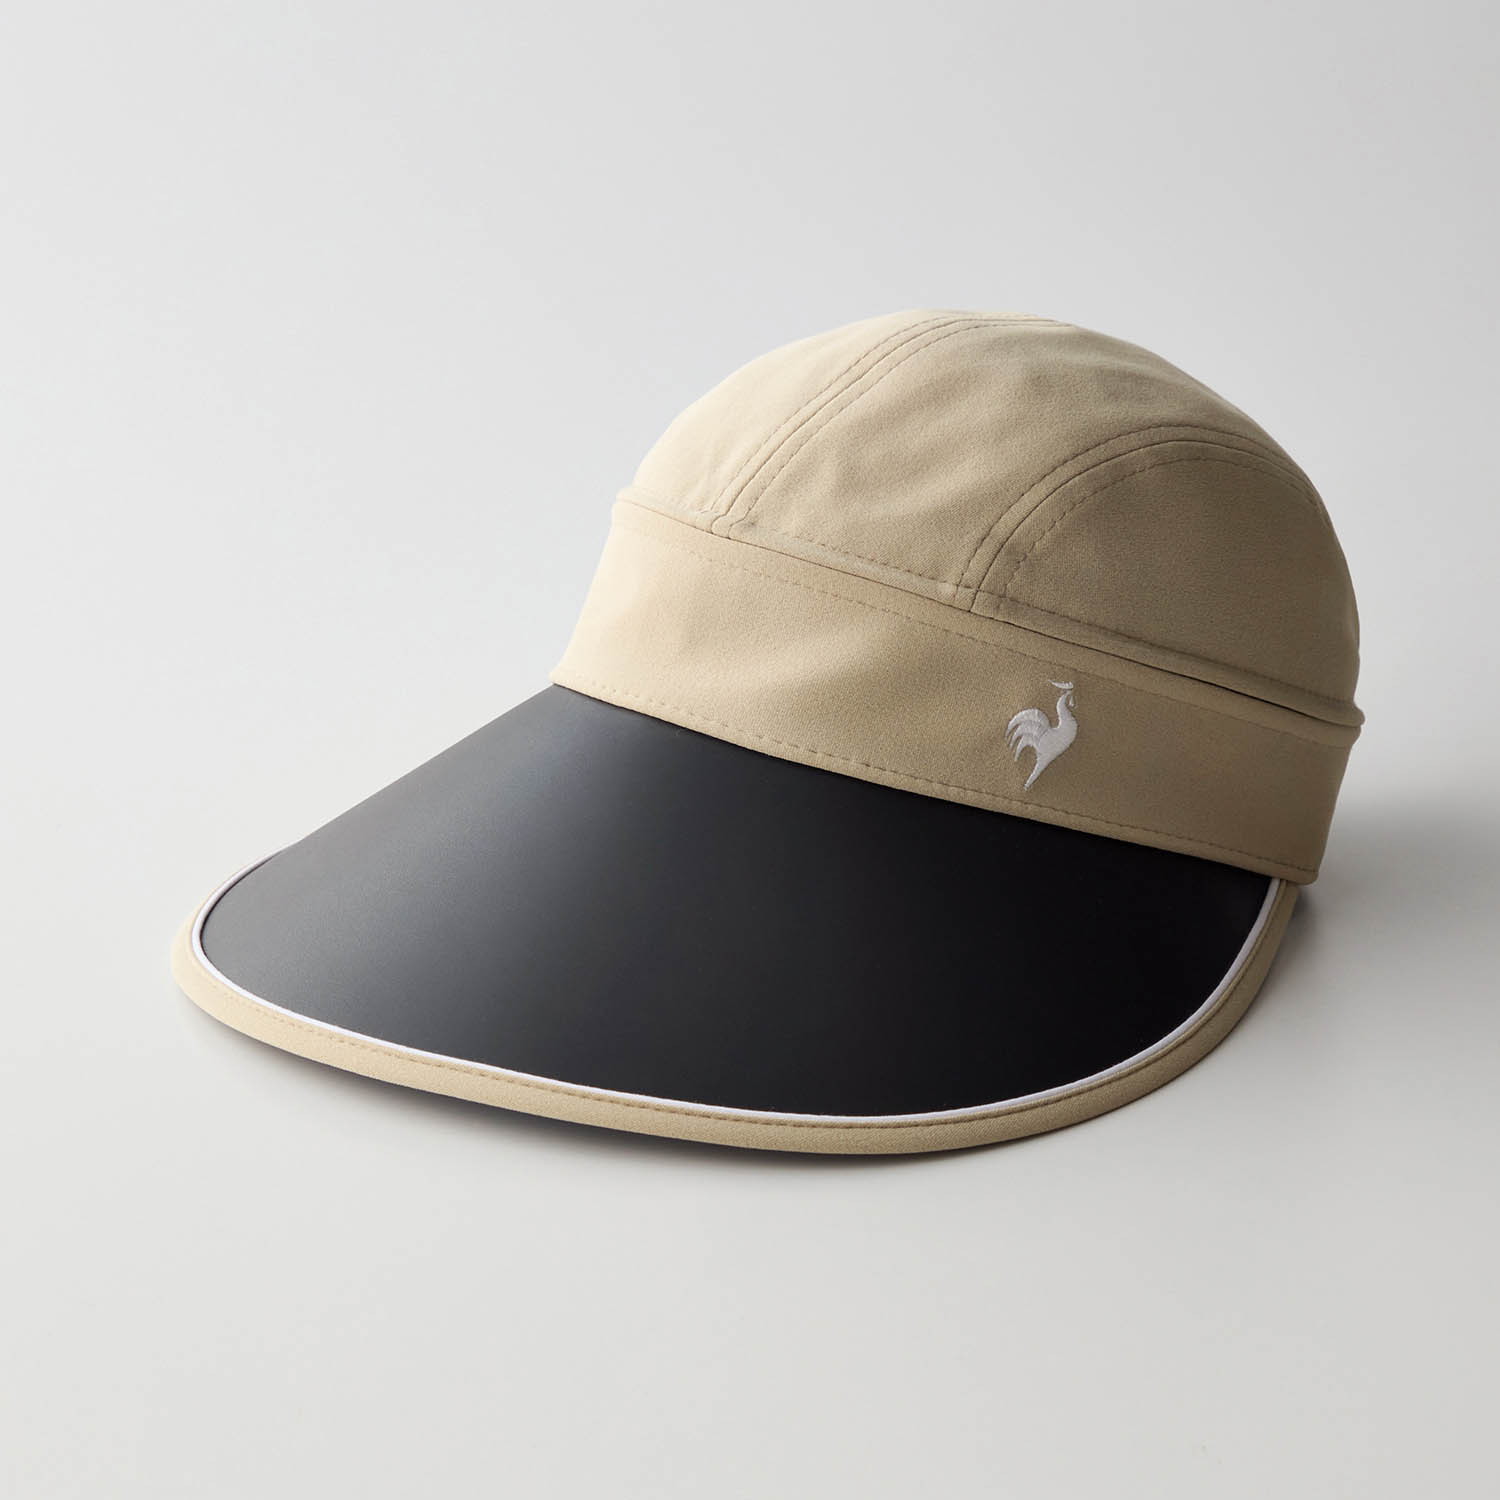 バイザー 帽子 キャップ レディース 女性 日焼け対策 2WAY 紫外線対策 ルコック シンプル お...